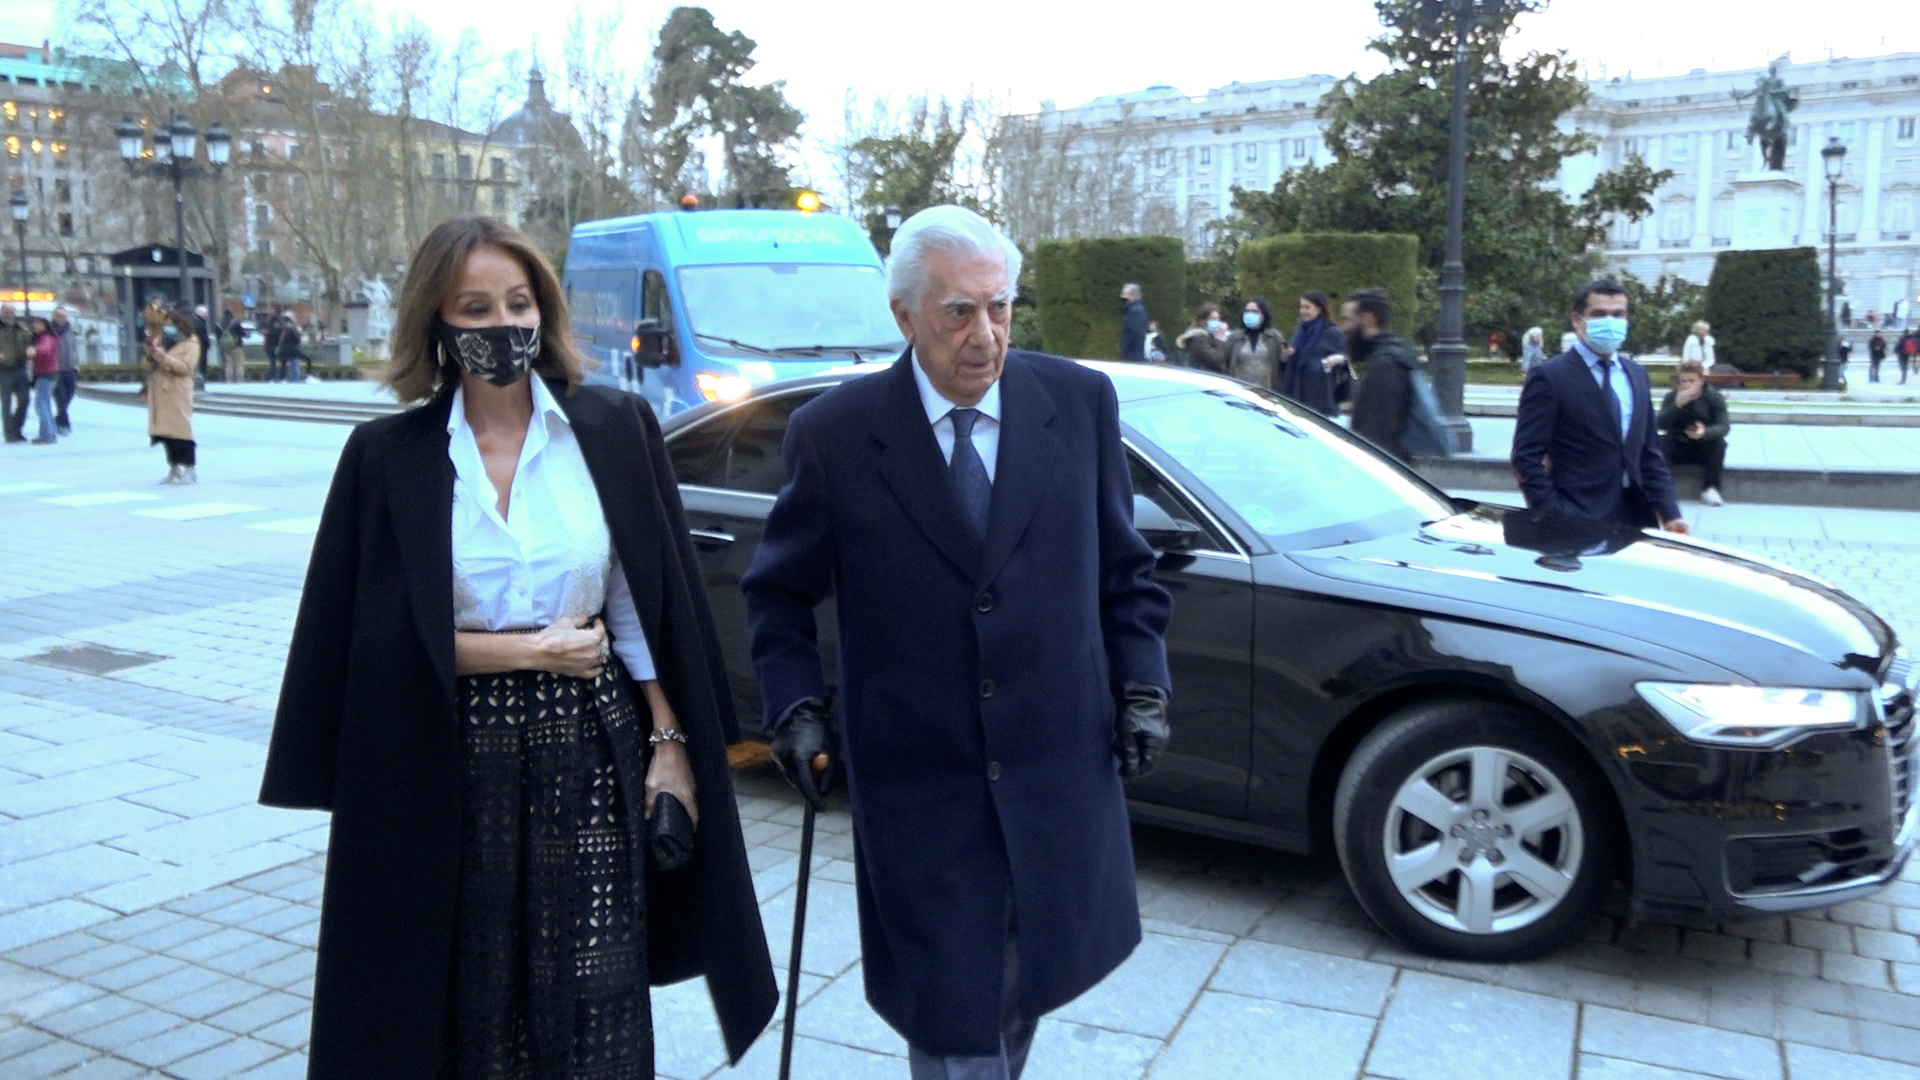 Isabel Preysler y Mario Vargas Llosa llegando al Teatro Real.